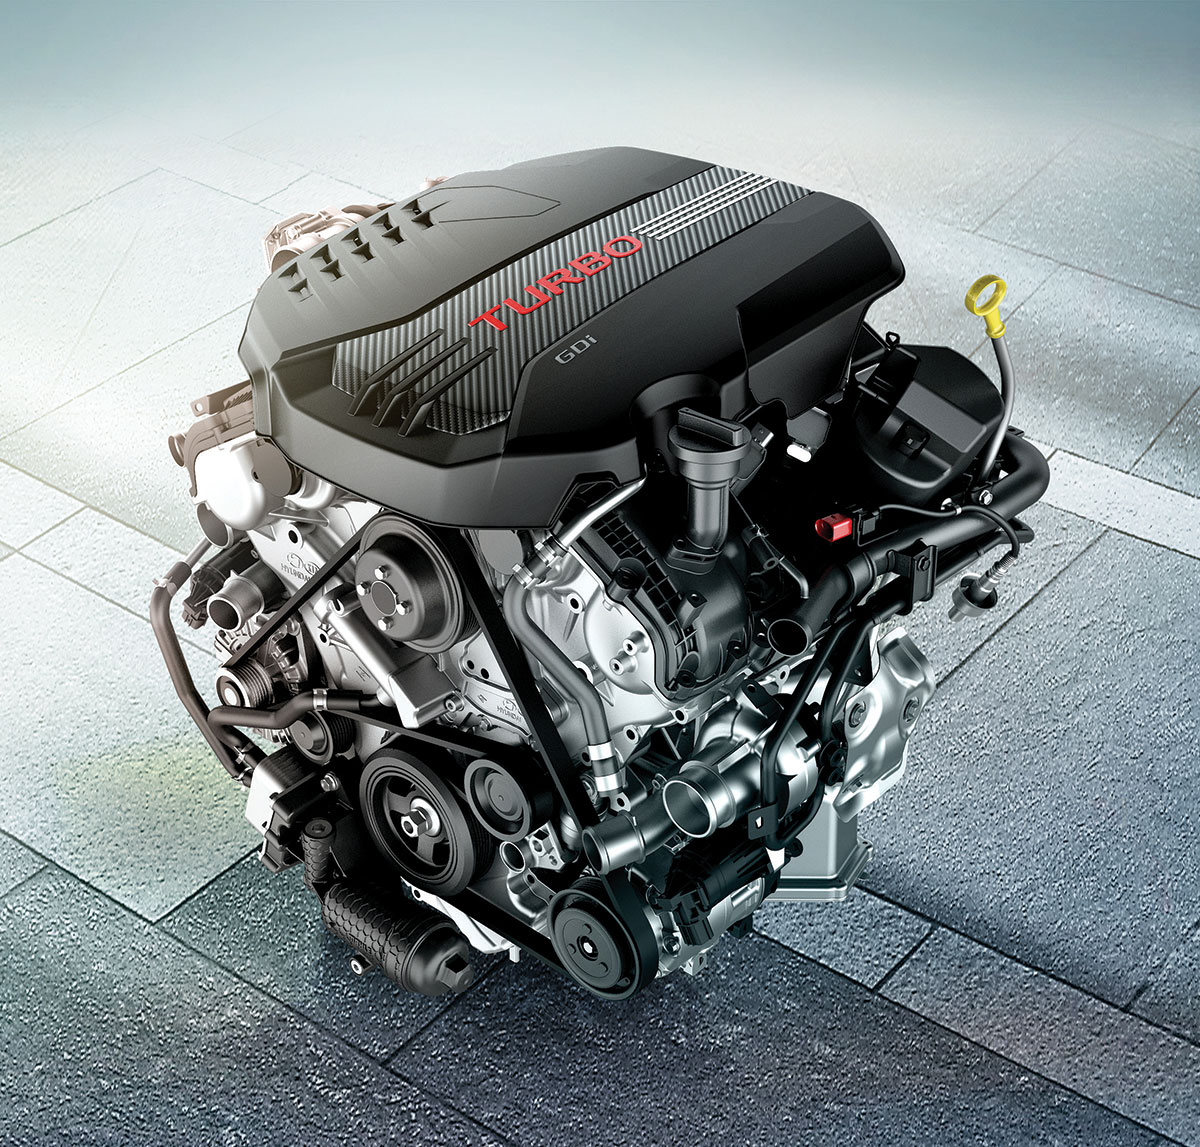 3.3 升 V6 雙渦輪缸內直噴引擎可輸出 366ps 最大馬力與 52kgm 峰值扭力。